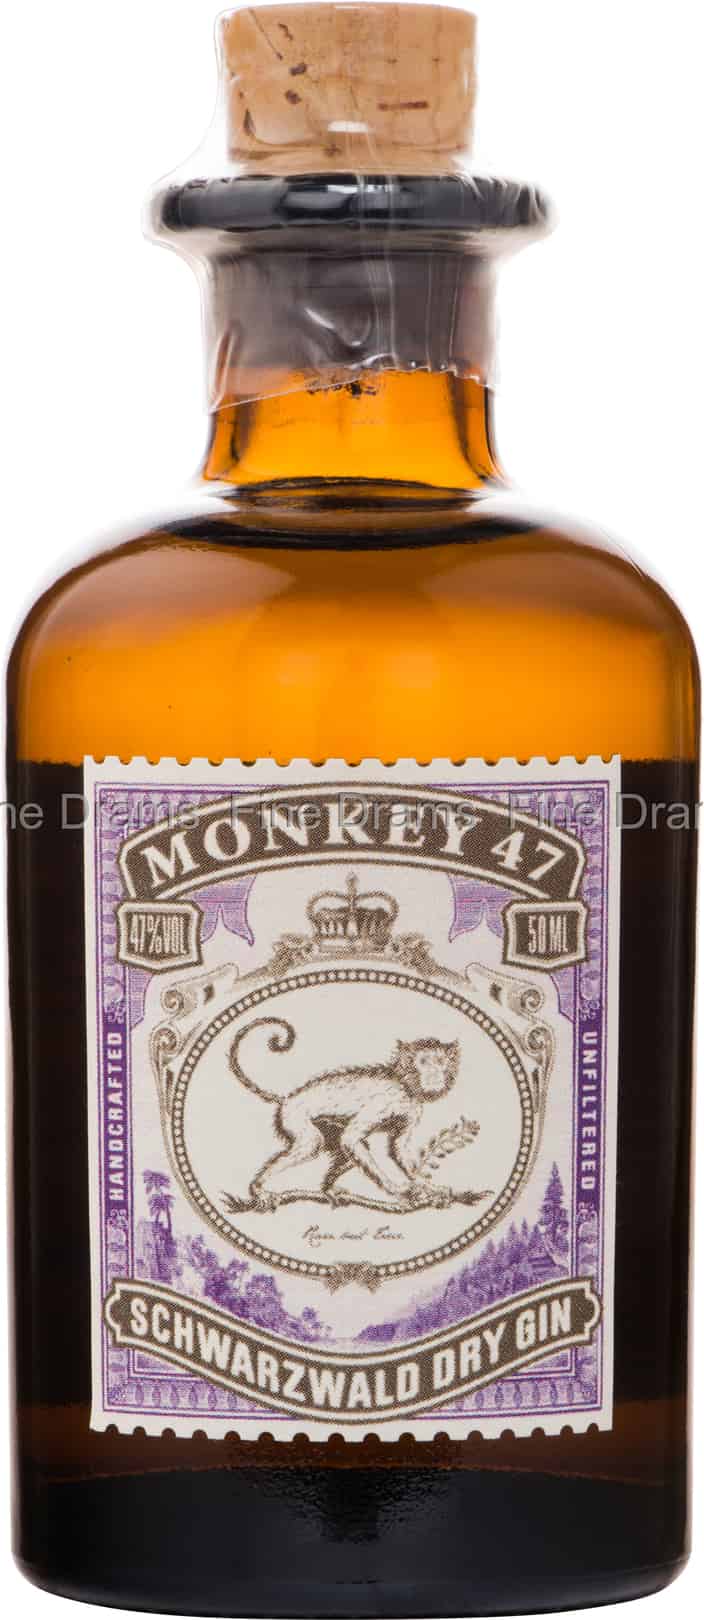 Monkey 47 Schwarzwald Dry Gin Miniature